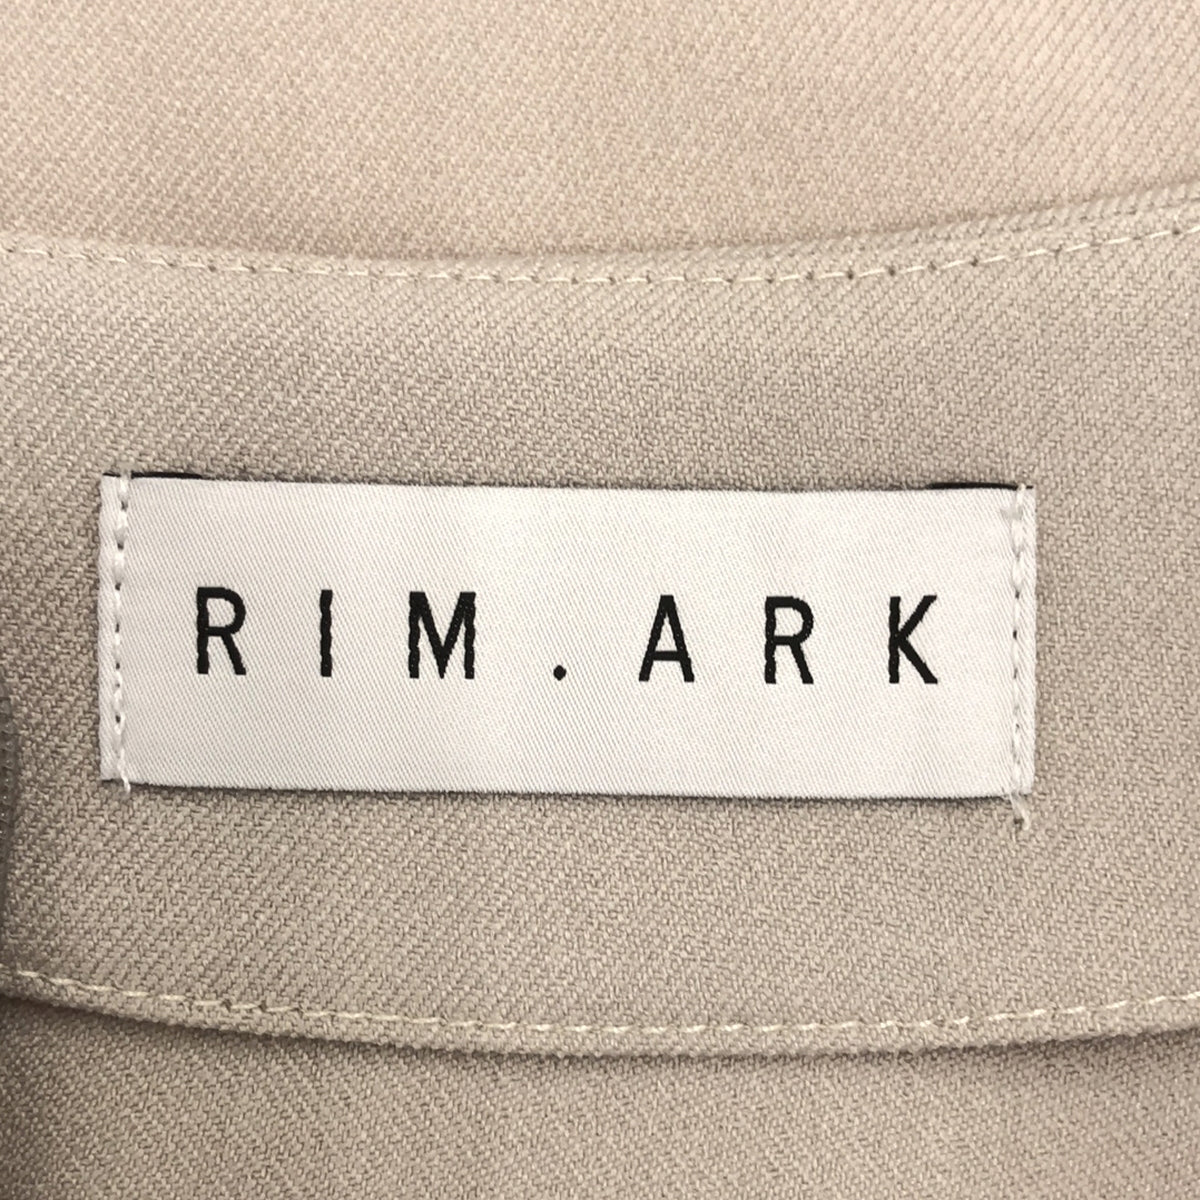 RIM.ARK / リムアーク | Round sleeve tops プルオーバートップス | 38 | グレージュ | レディース